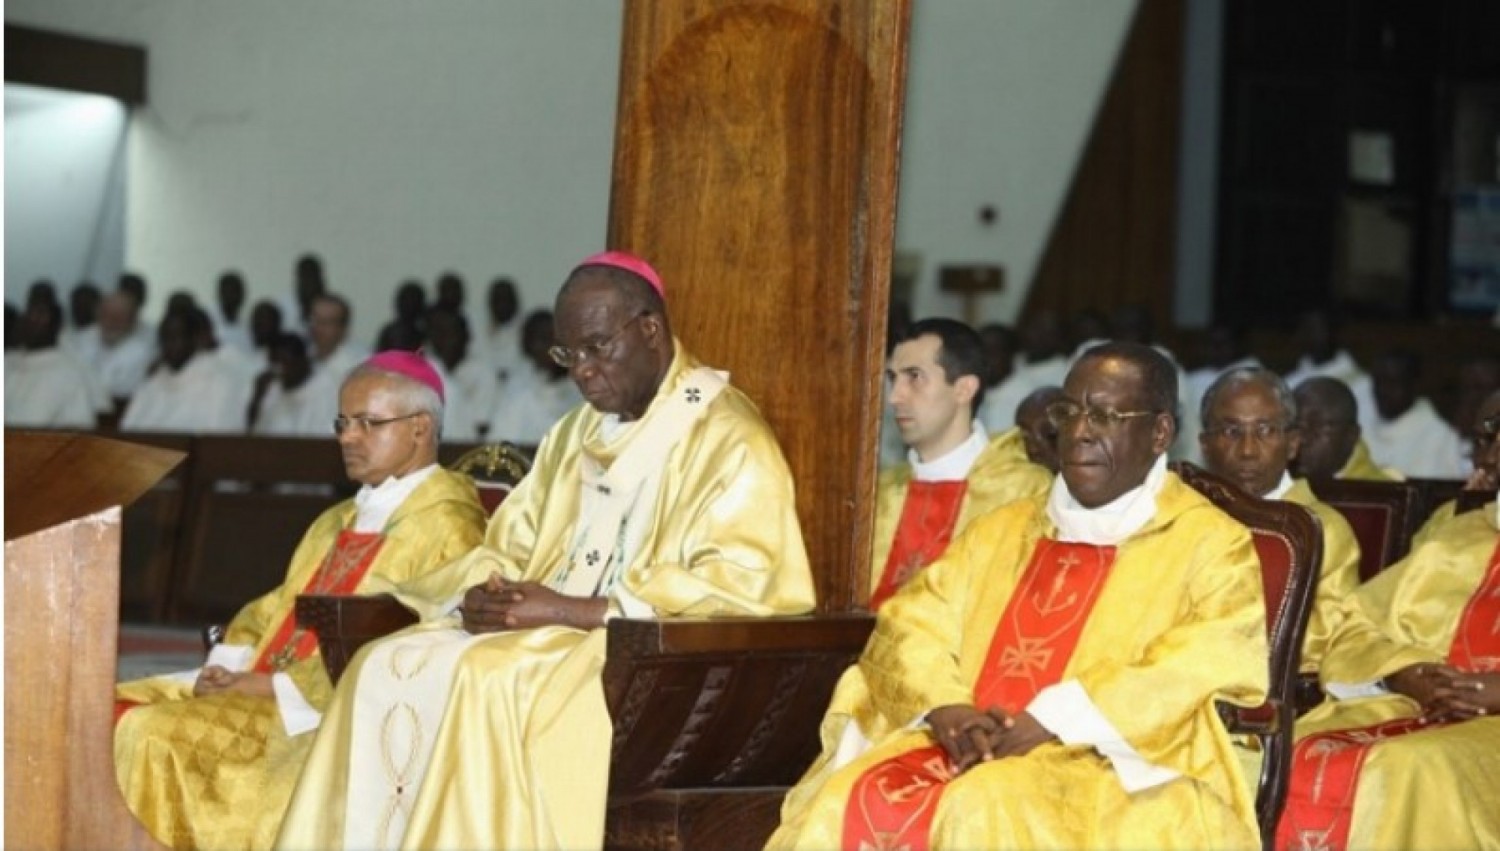 Côte d'Ivoire : Bénédiction des couples de même sexe décidée par le Vatican, Mgr Kutwa prie les Prêtes et Diacres d'attendre